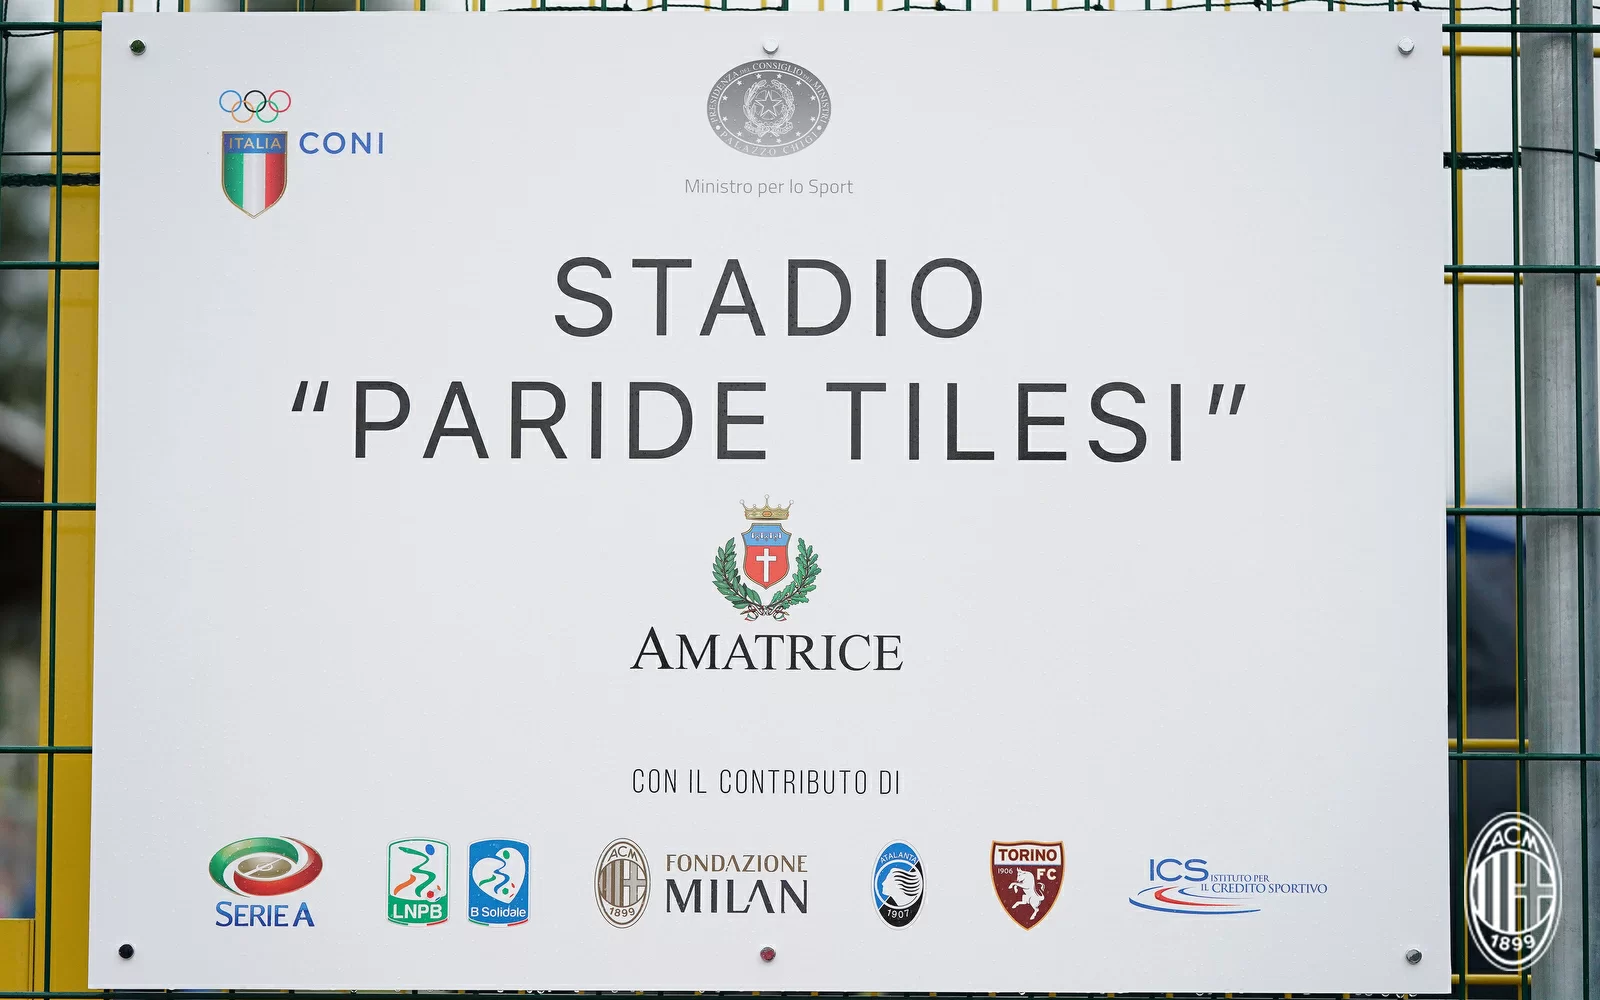 Fondazione Milan contribuisce alla ricostruzione dello stadio di Amatrice. Presente Franco Baresi